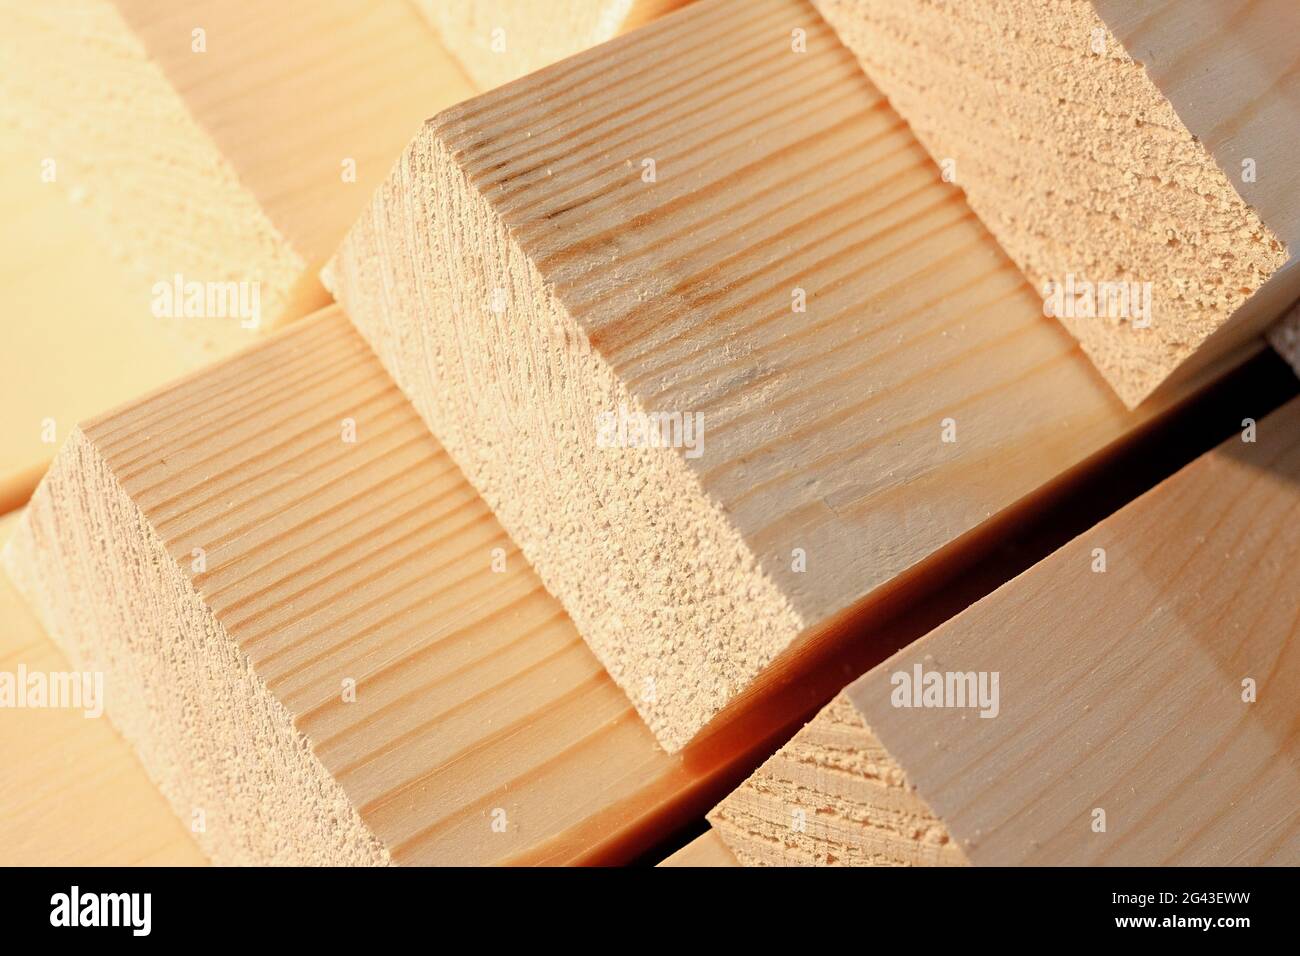 Die Holzstäbe werden in einem Stapel gestapelt. Sägen Trocknen und Vermarktung von Holz. Industrieller Hintergrund. Stockfoto